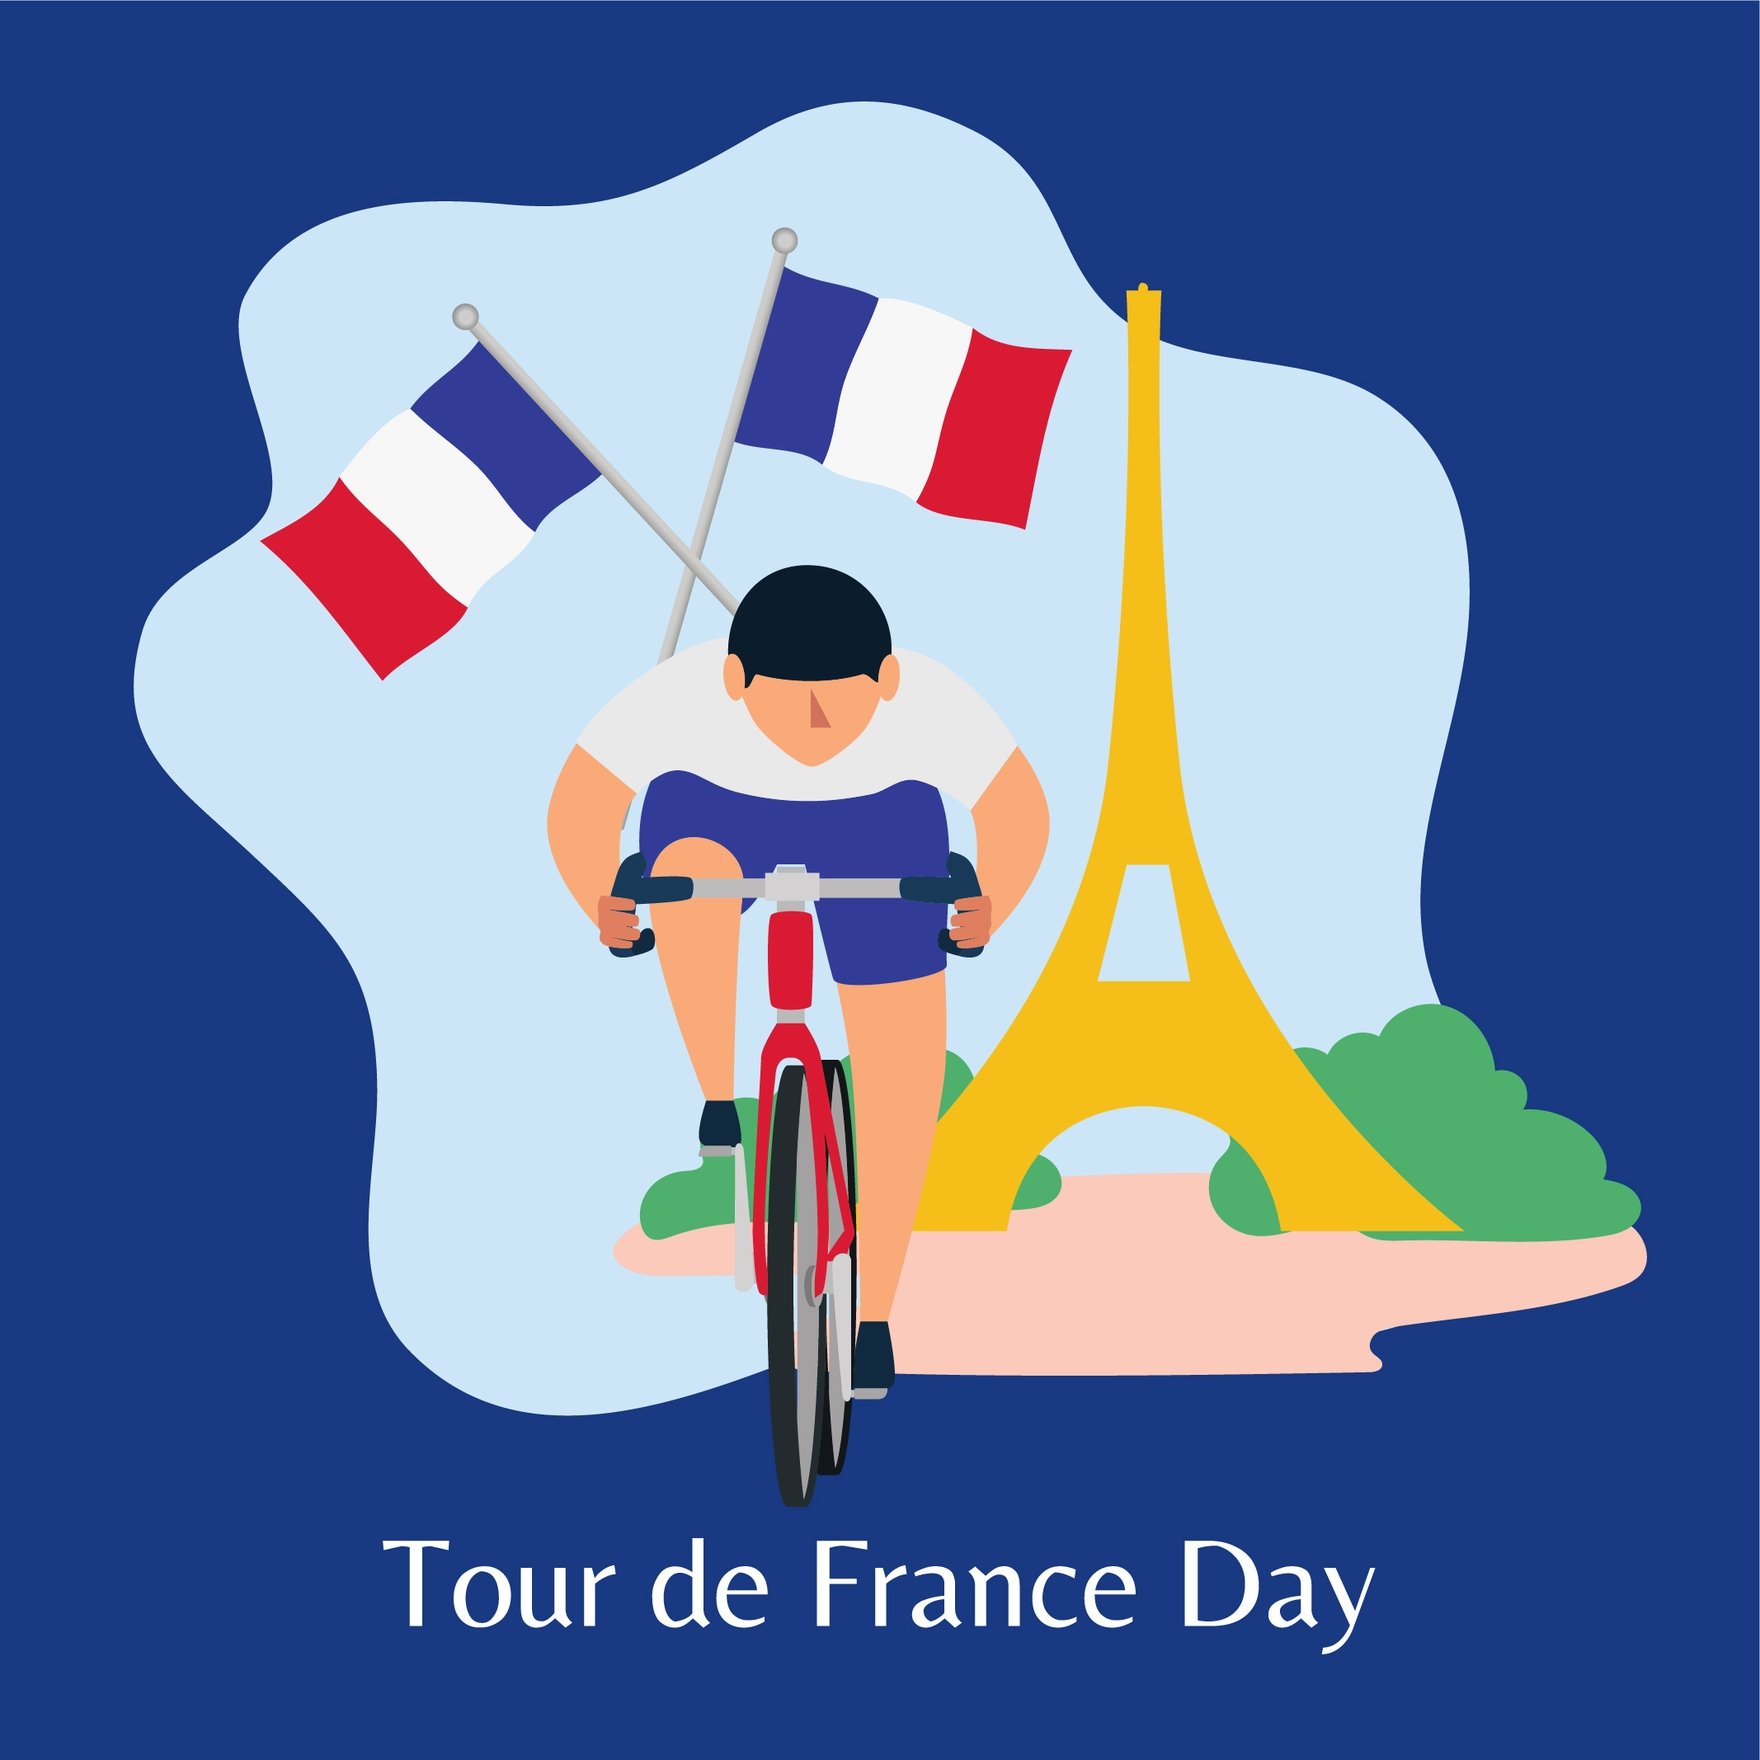 Free Tour de France Celebration Vector in Illustrator, PSD, EPS, SVG, JPG, PNG